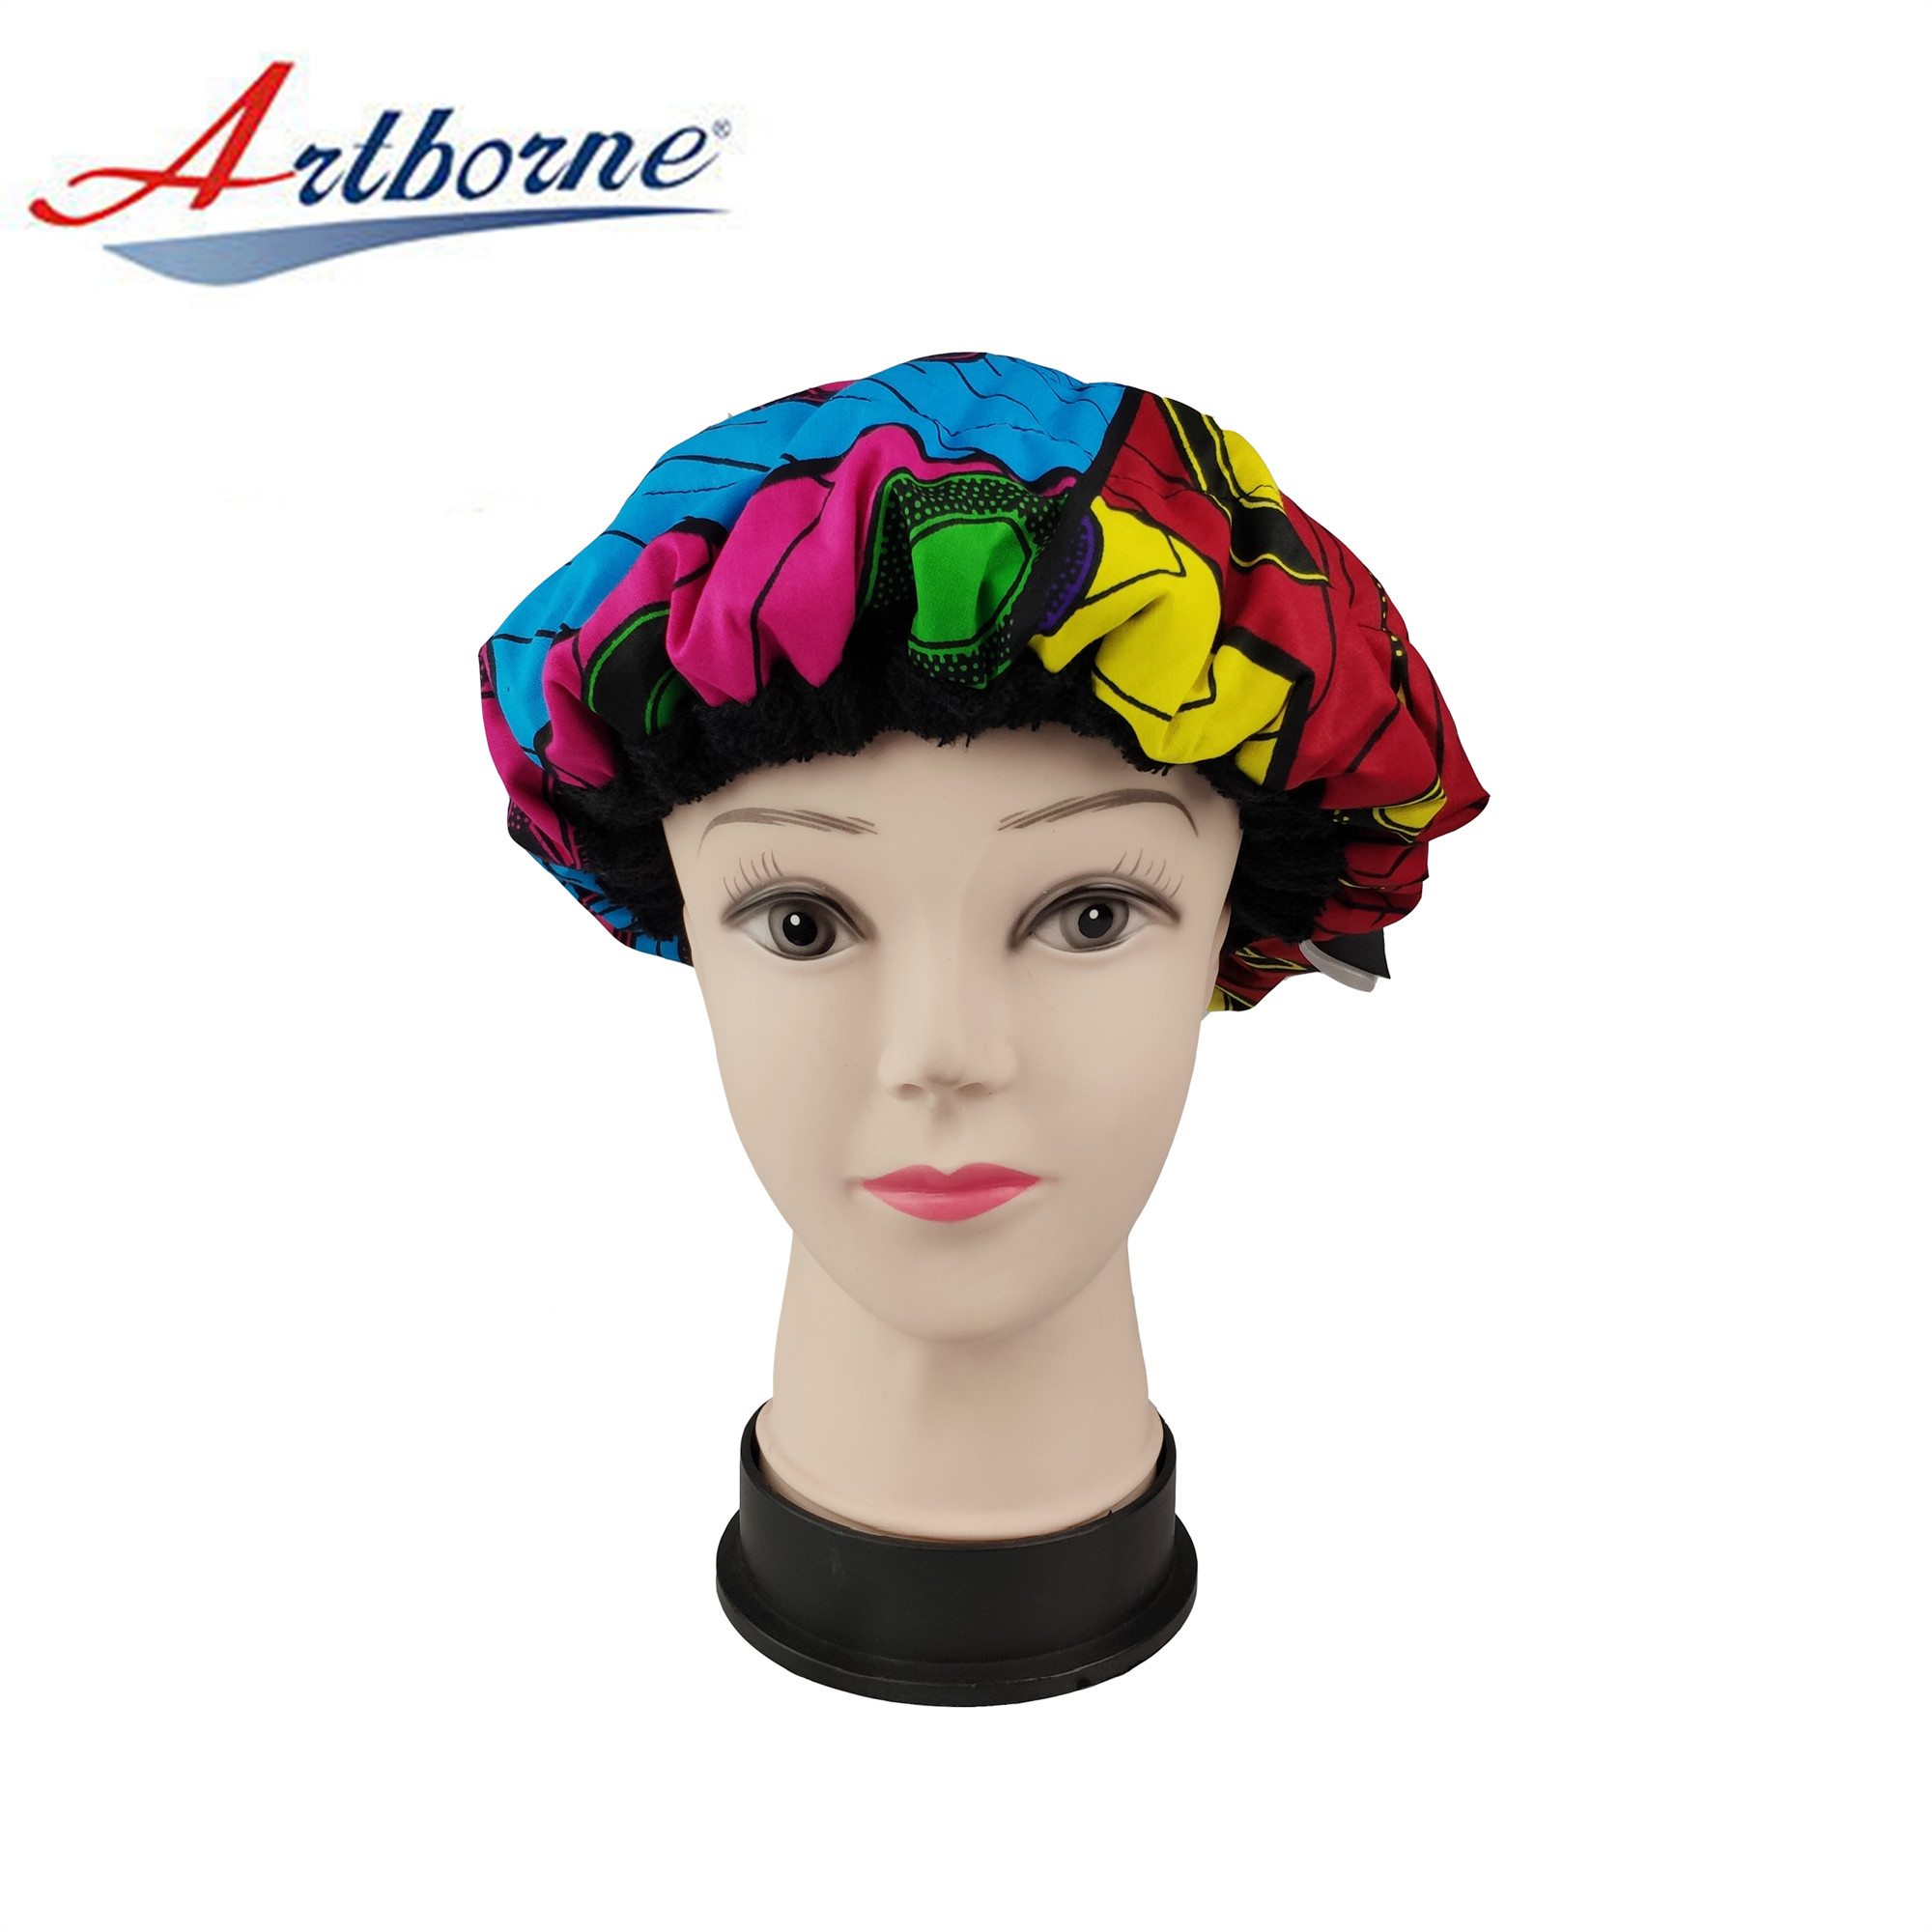 Artborne cordless conditioning bonnet factory for women-33